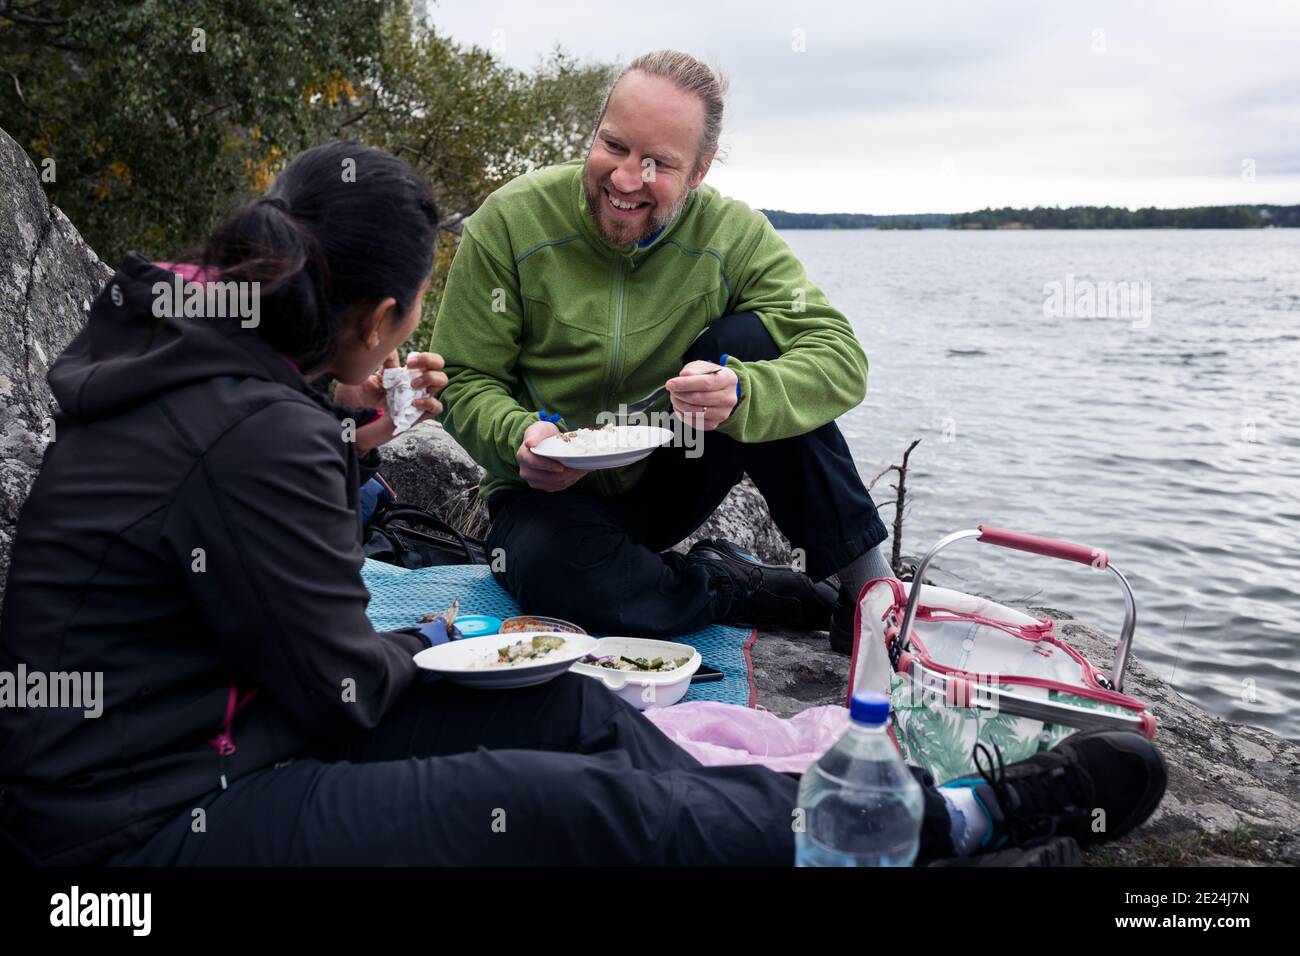 Couple having picnic at lake Stock Photo